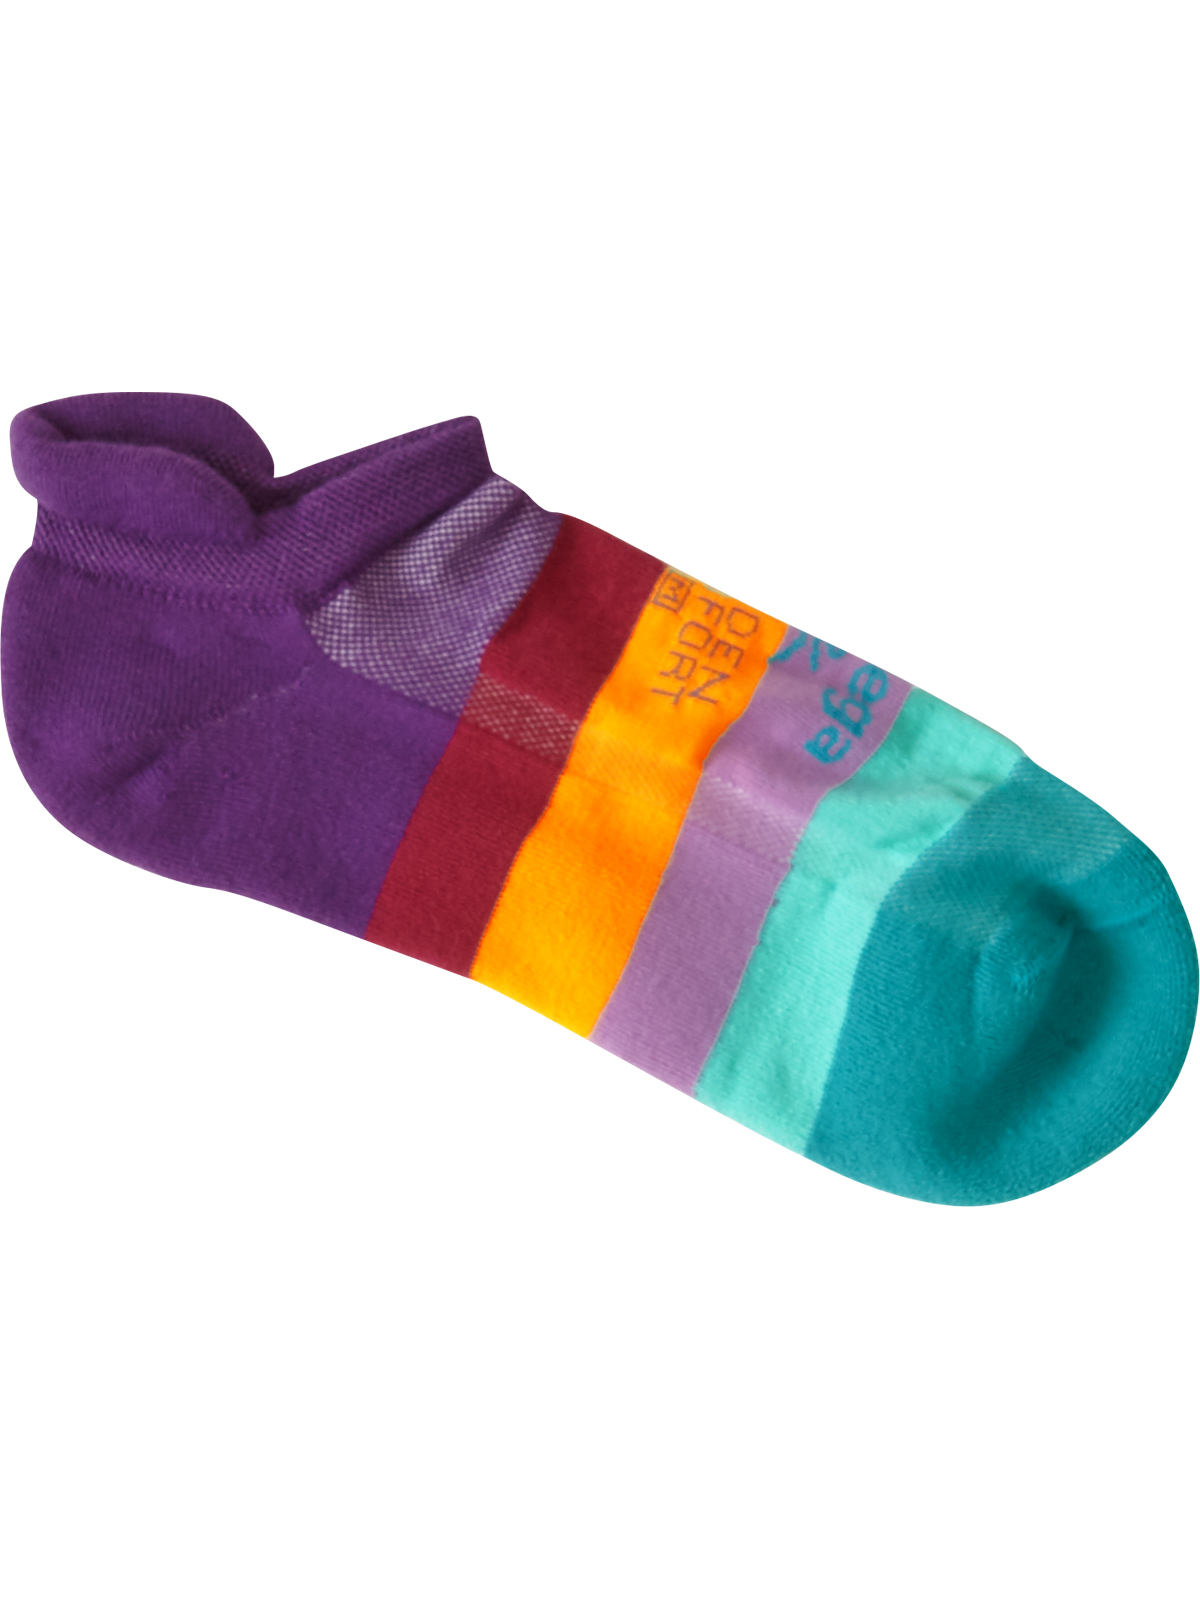 Balega Hidden Comfort Sole Cushioning Running Socks 